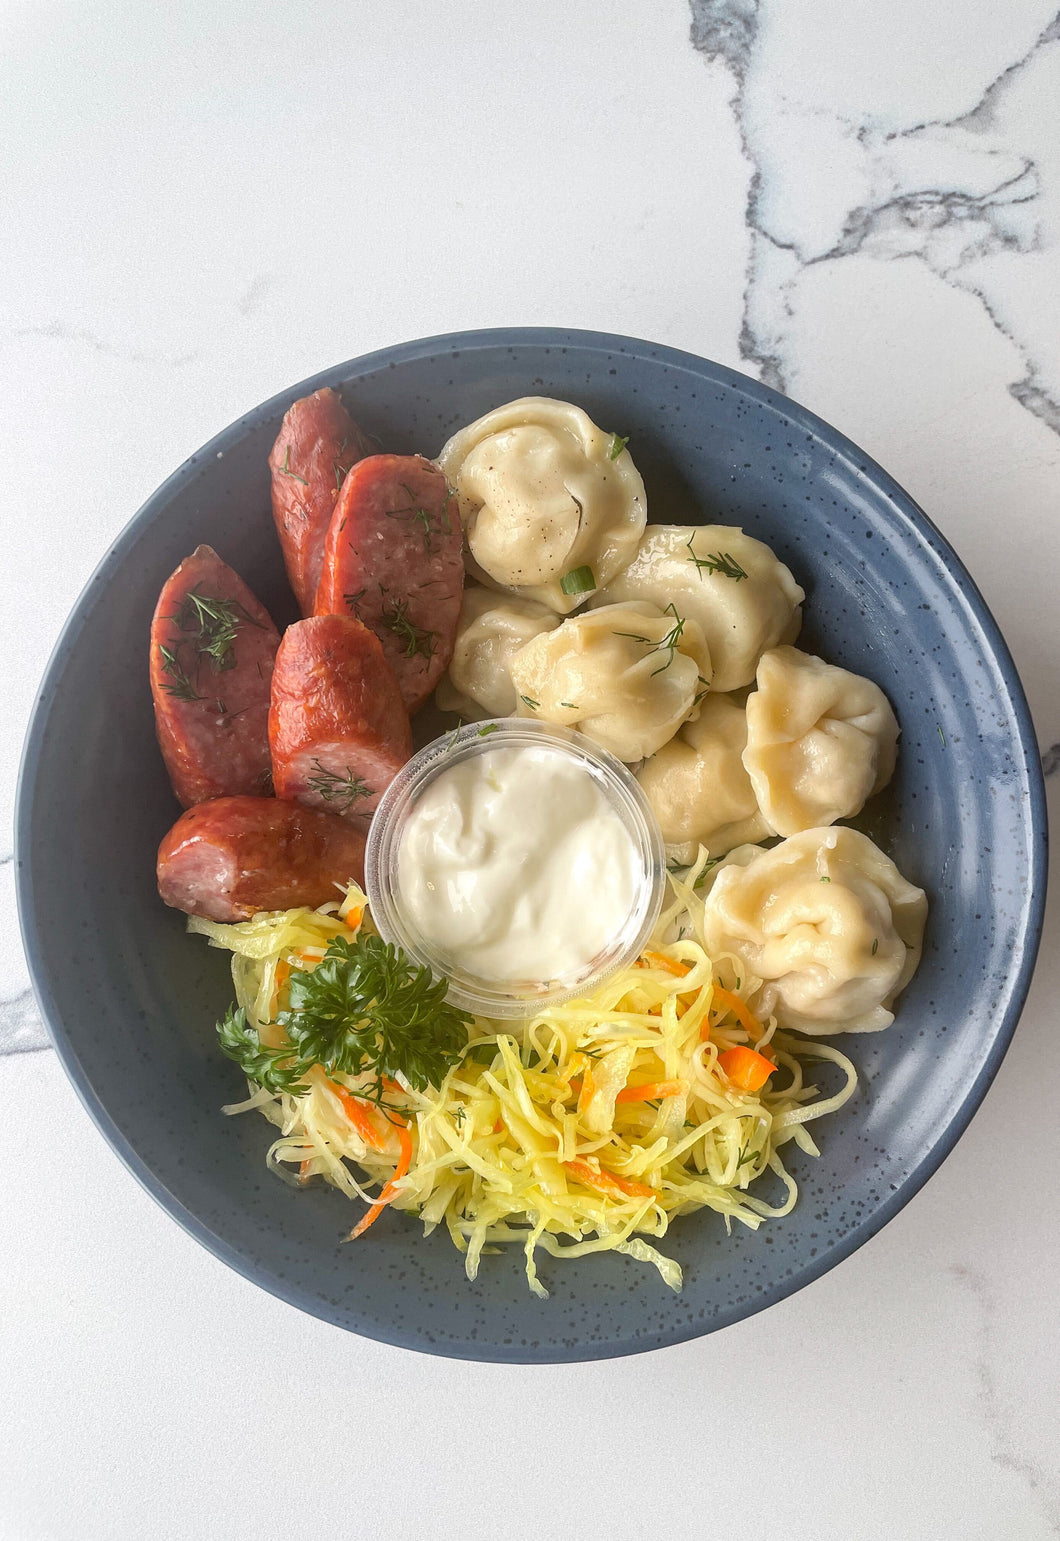 Ukrainian Sausage, Dumpling and Cabbage Salad